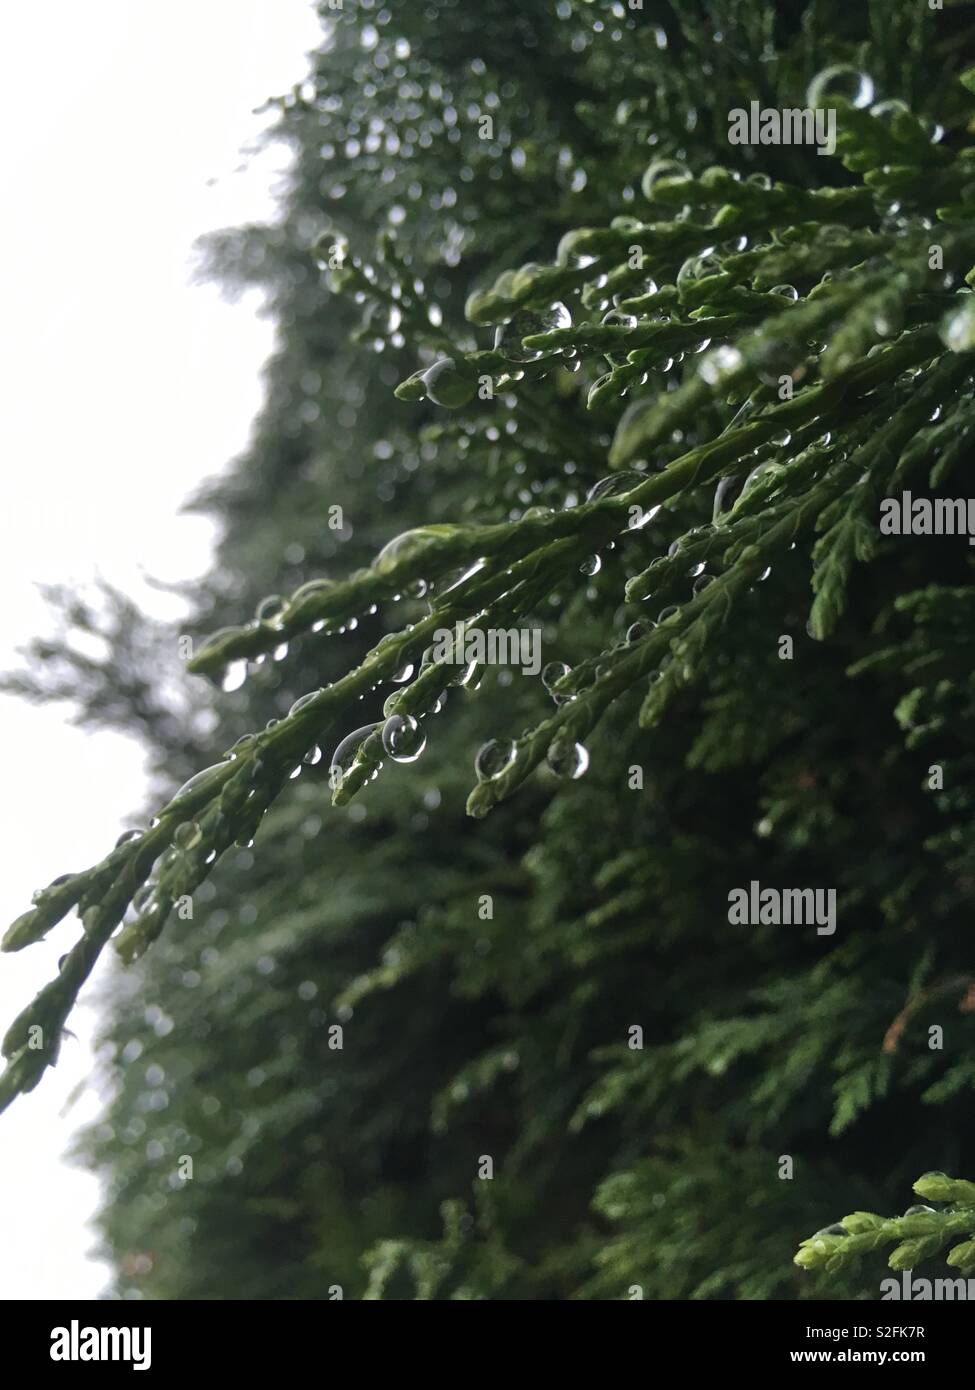 Conifer tree in the rain Stock Photo